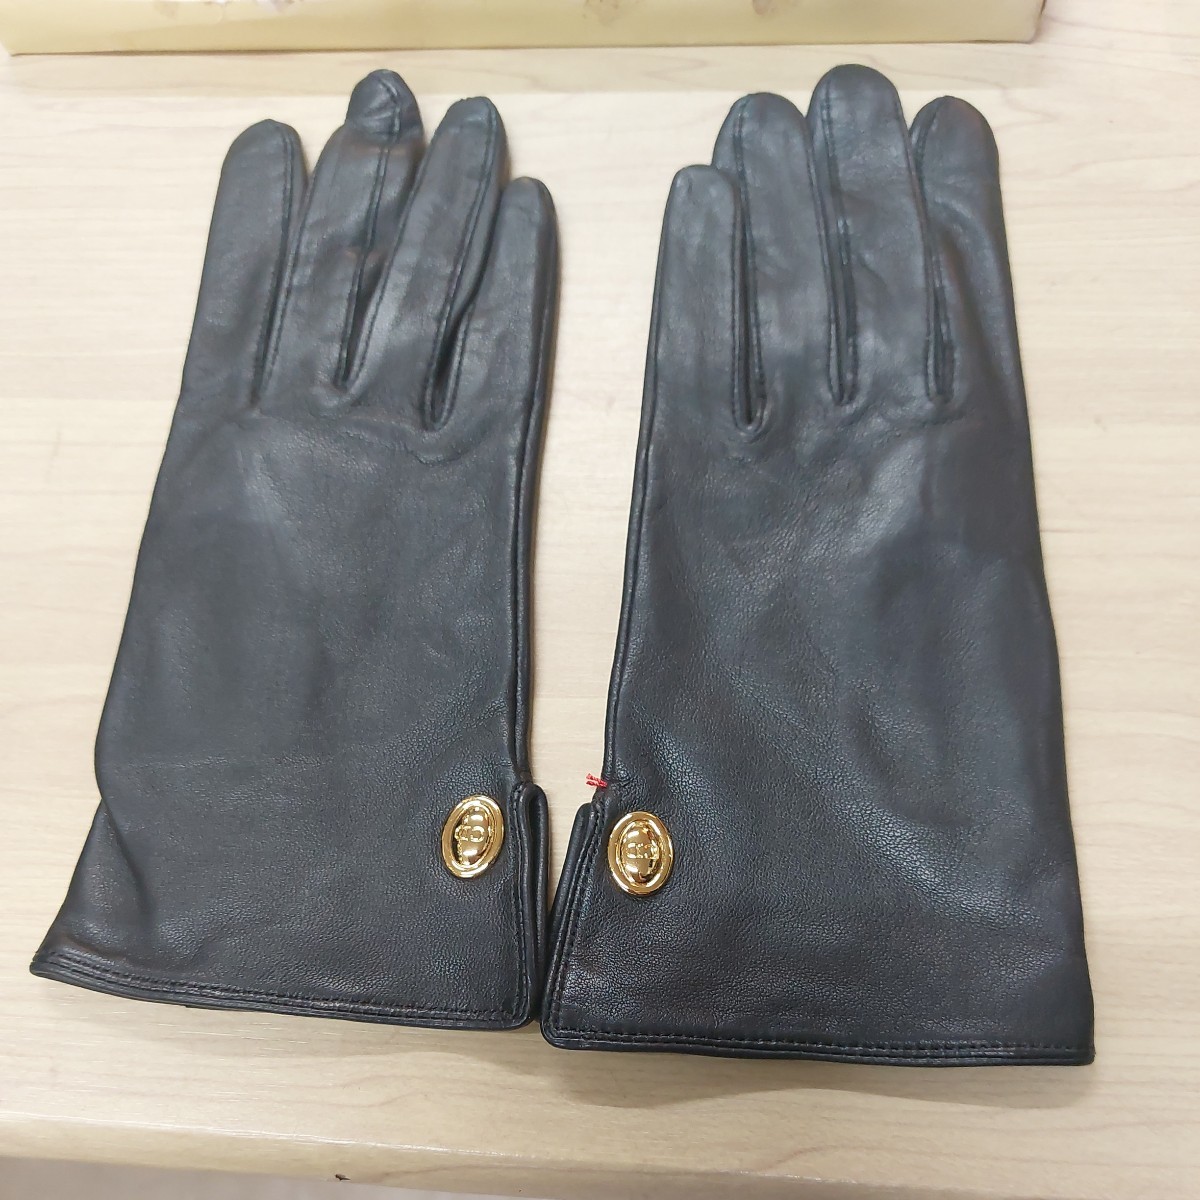 Кожаные кожаные перчатки христианины Dior упаковывают кожу кожу кожа грязной, но рядом с неиспользованными кожаными перчатками черные перчатки